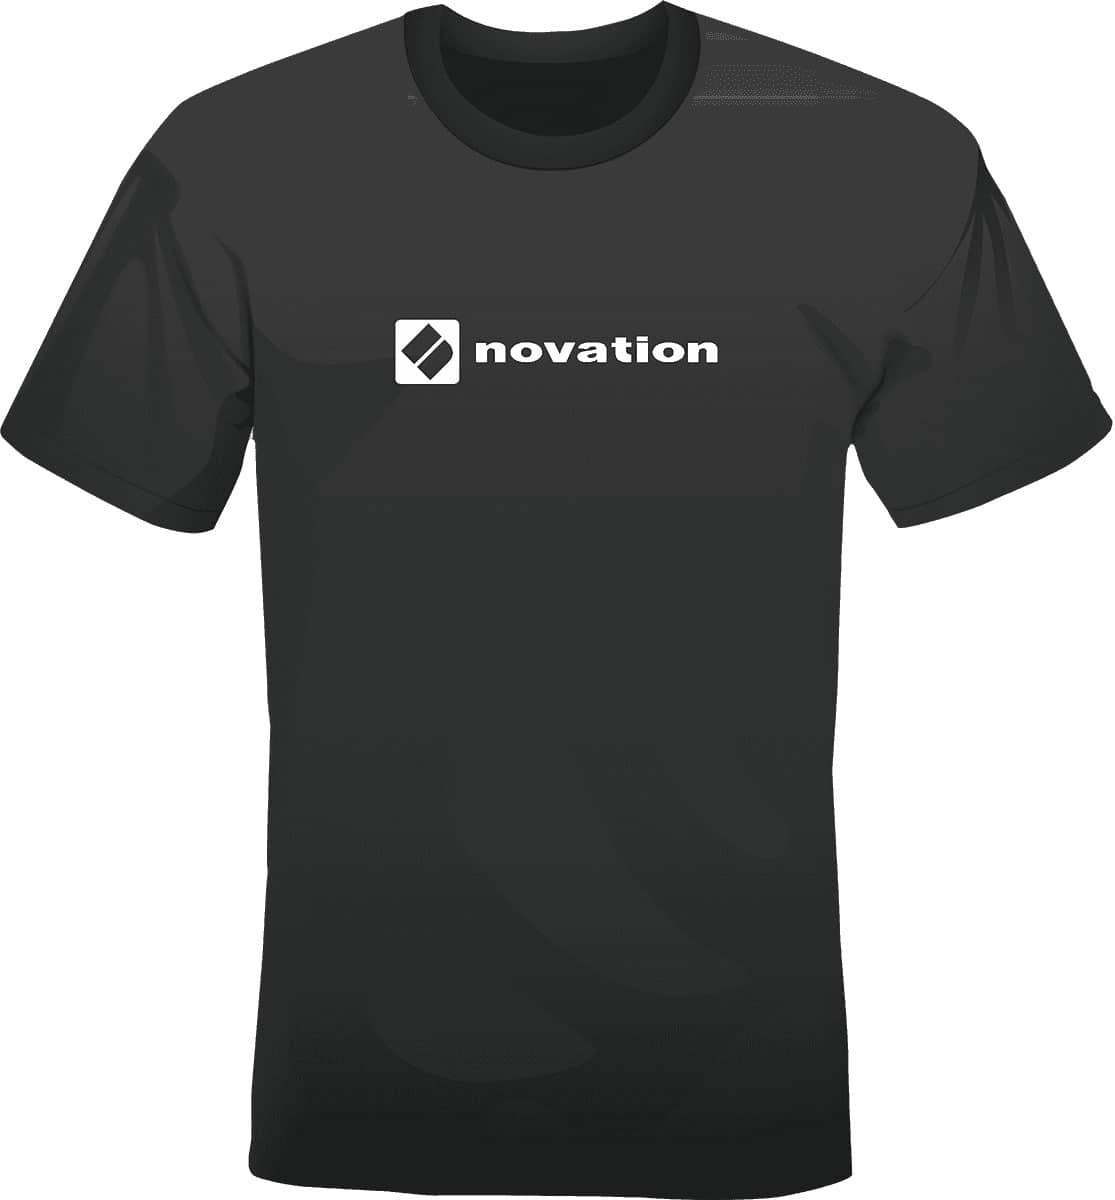 NOVATION T-SHIRT NOVATION TAILLE M